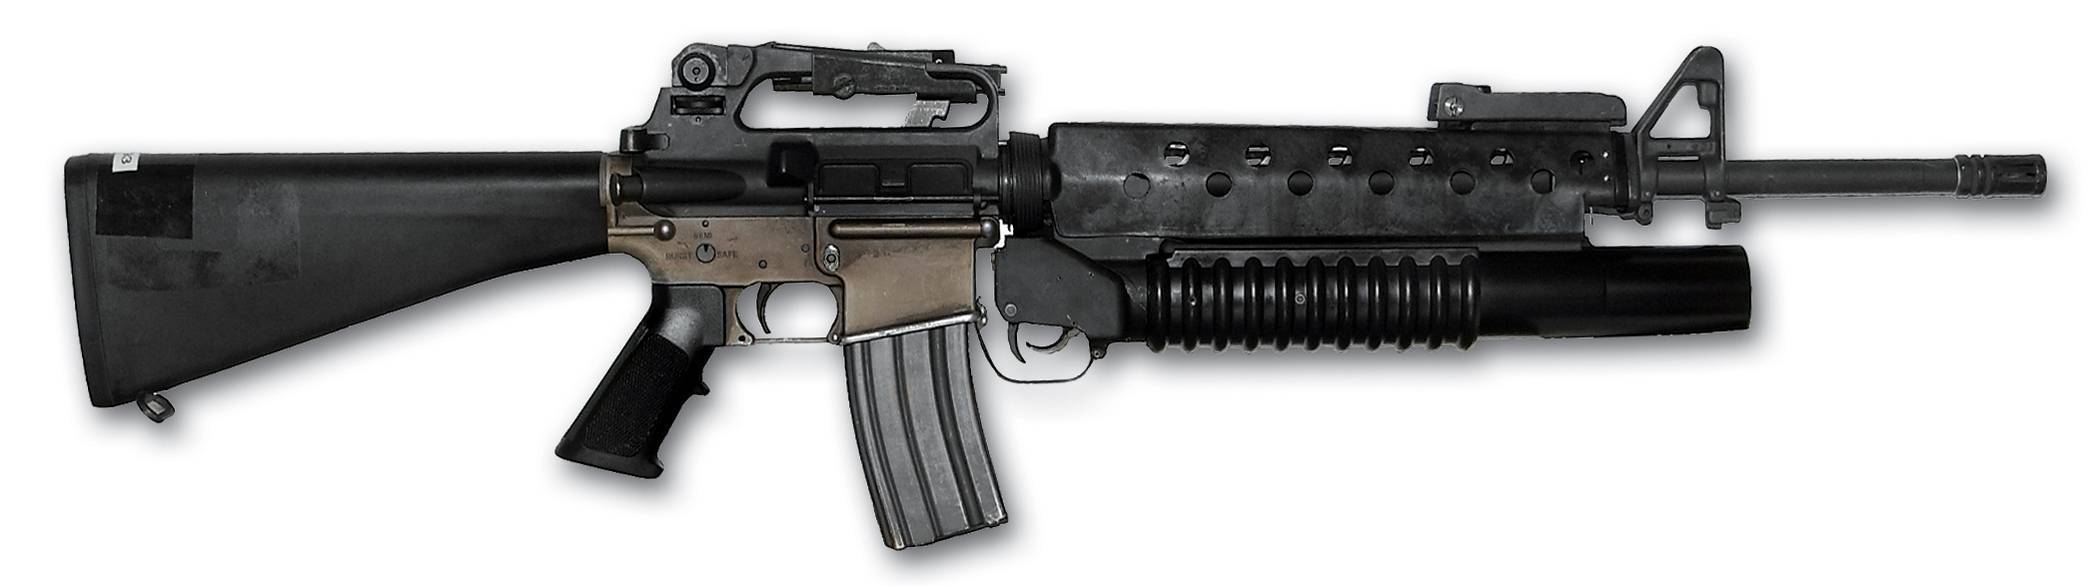 Штурмовая винтовка m16